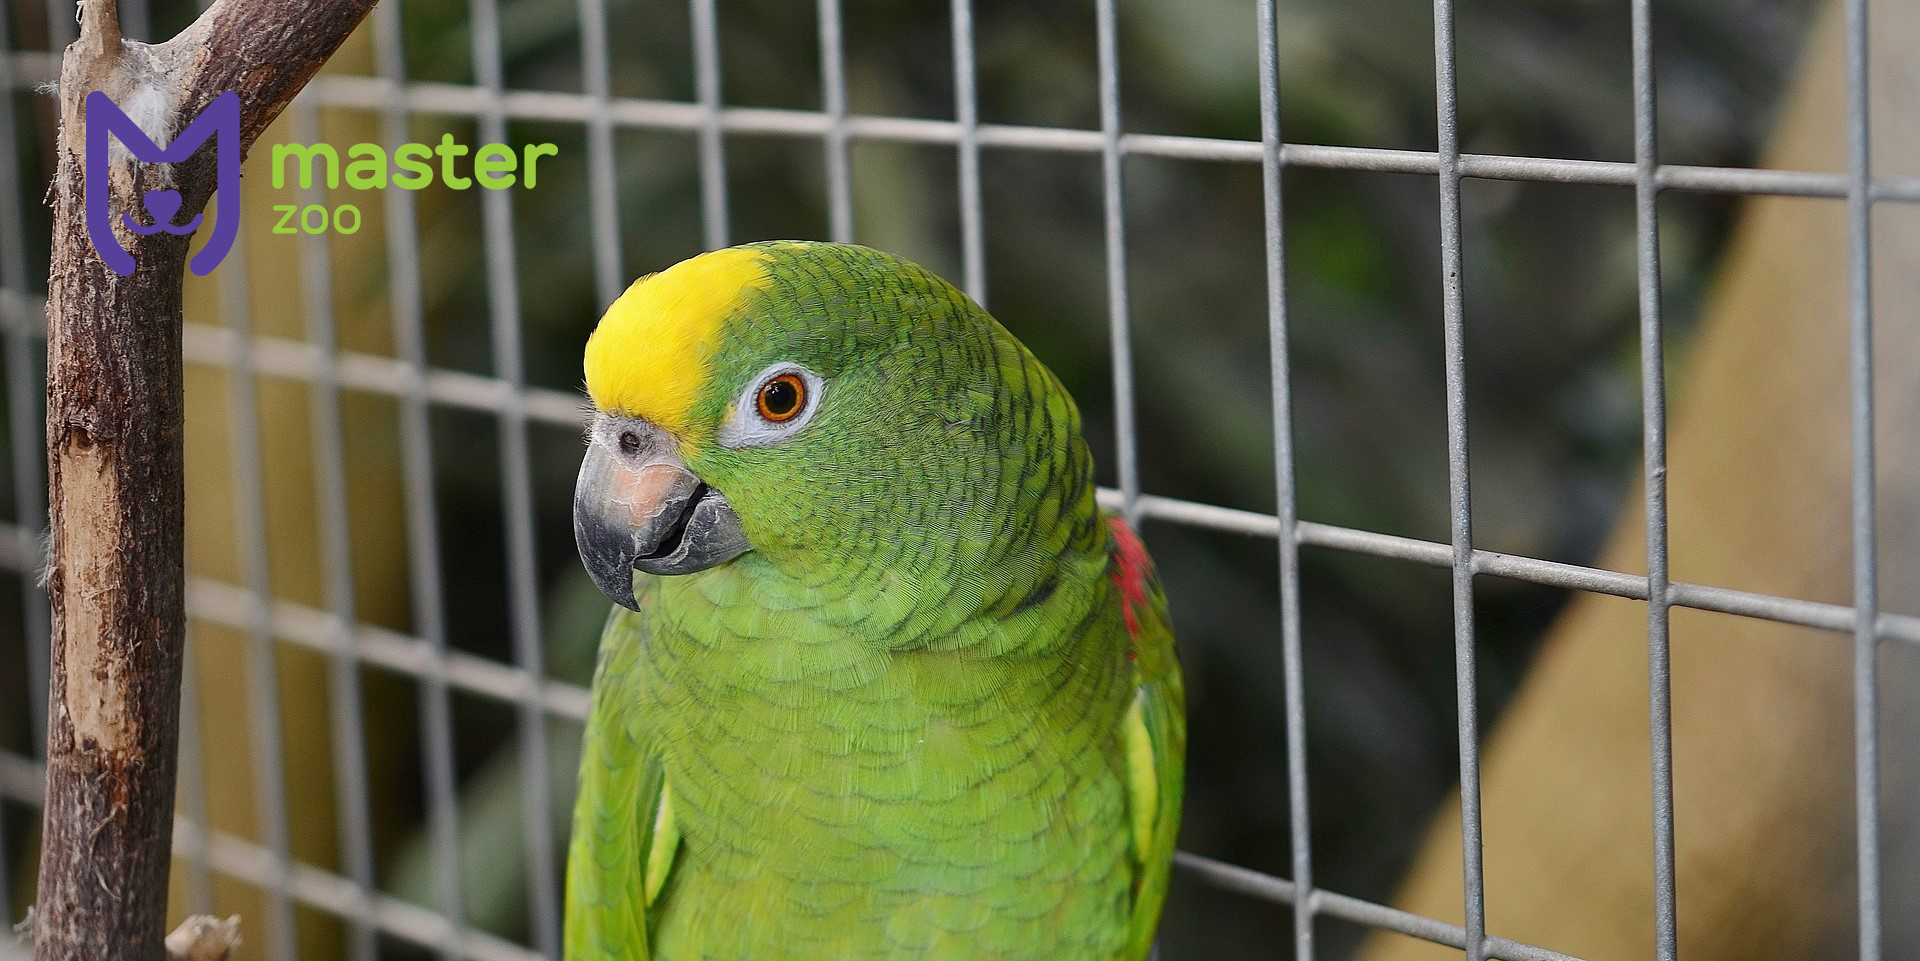 Як часто потрібно прибирати в клітці у папуги?